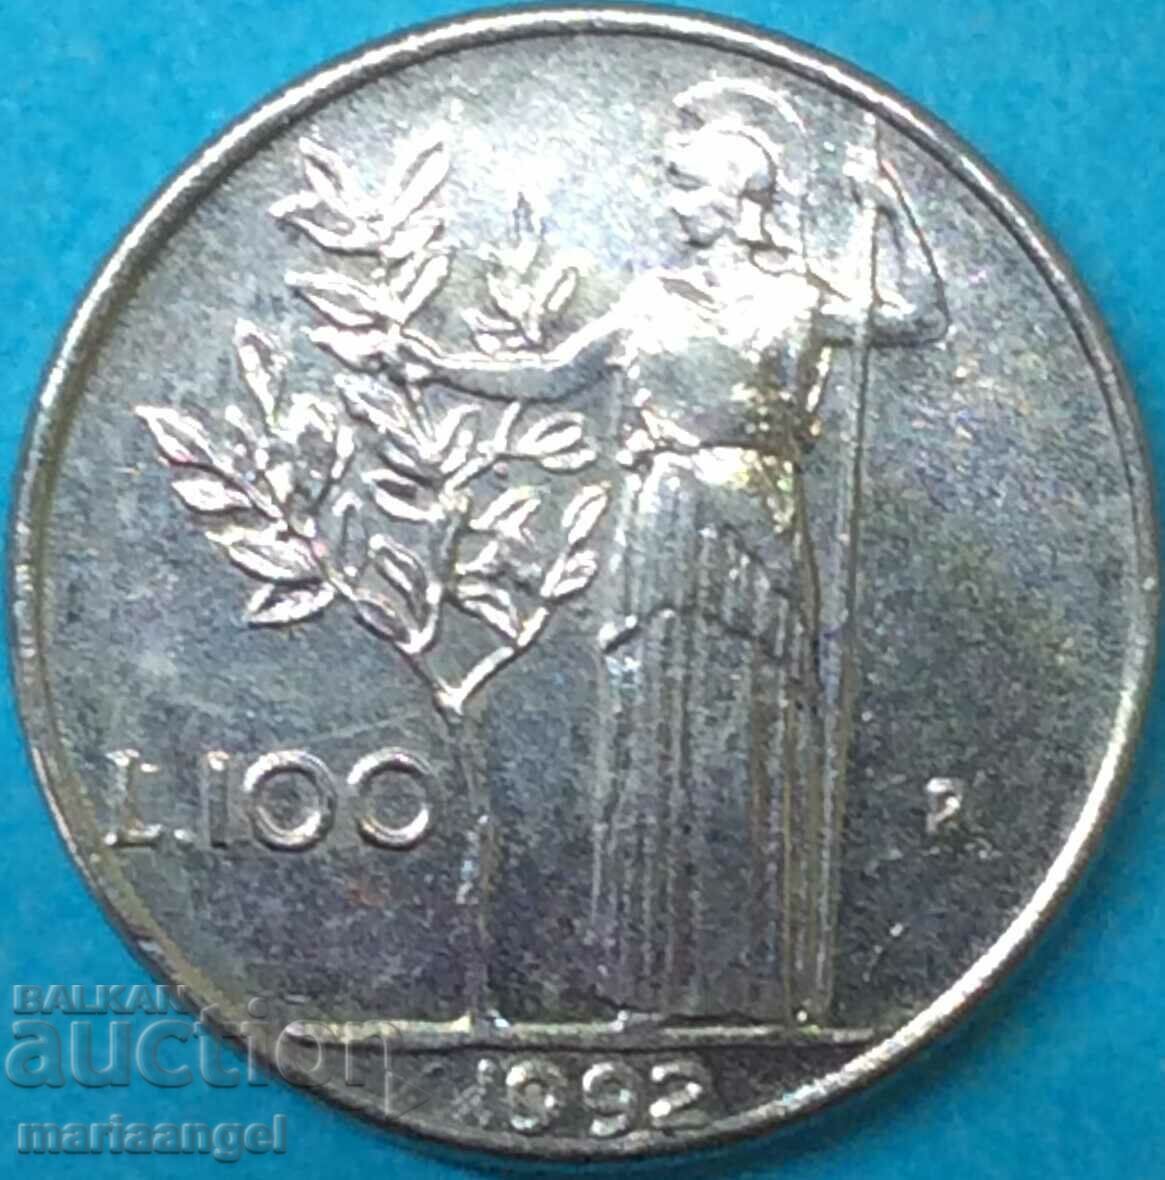 100 лири 1992 Италия Минерва